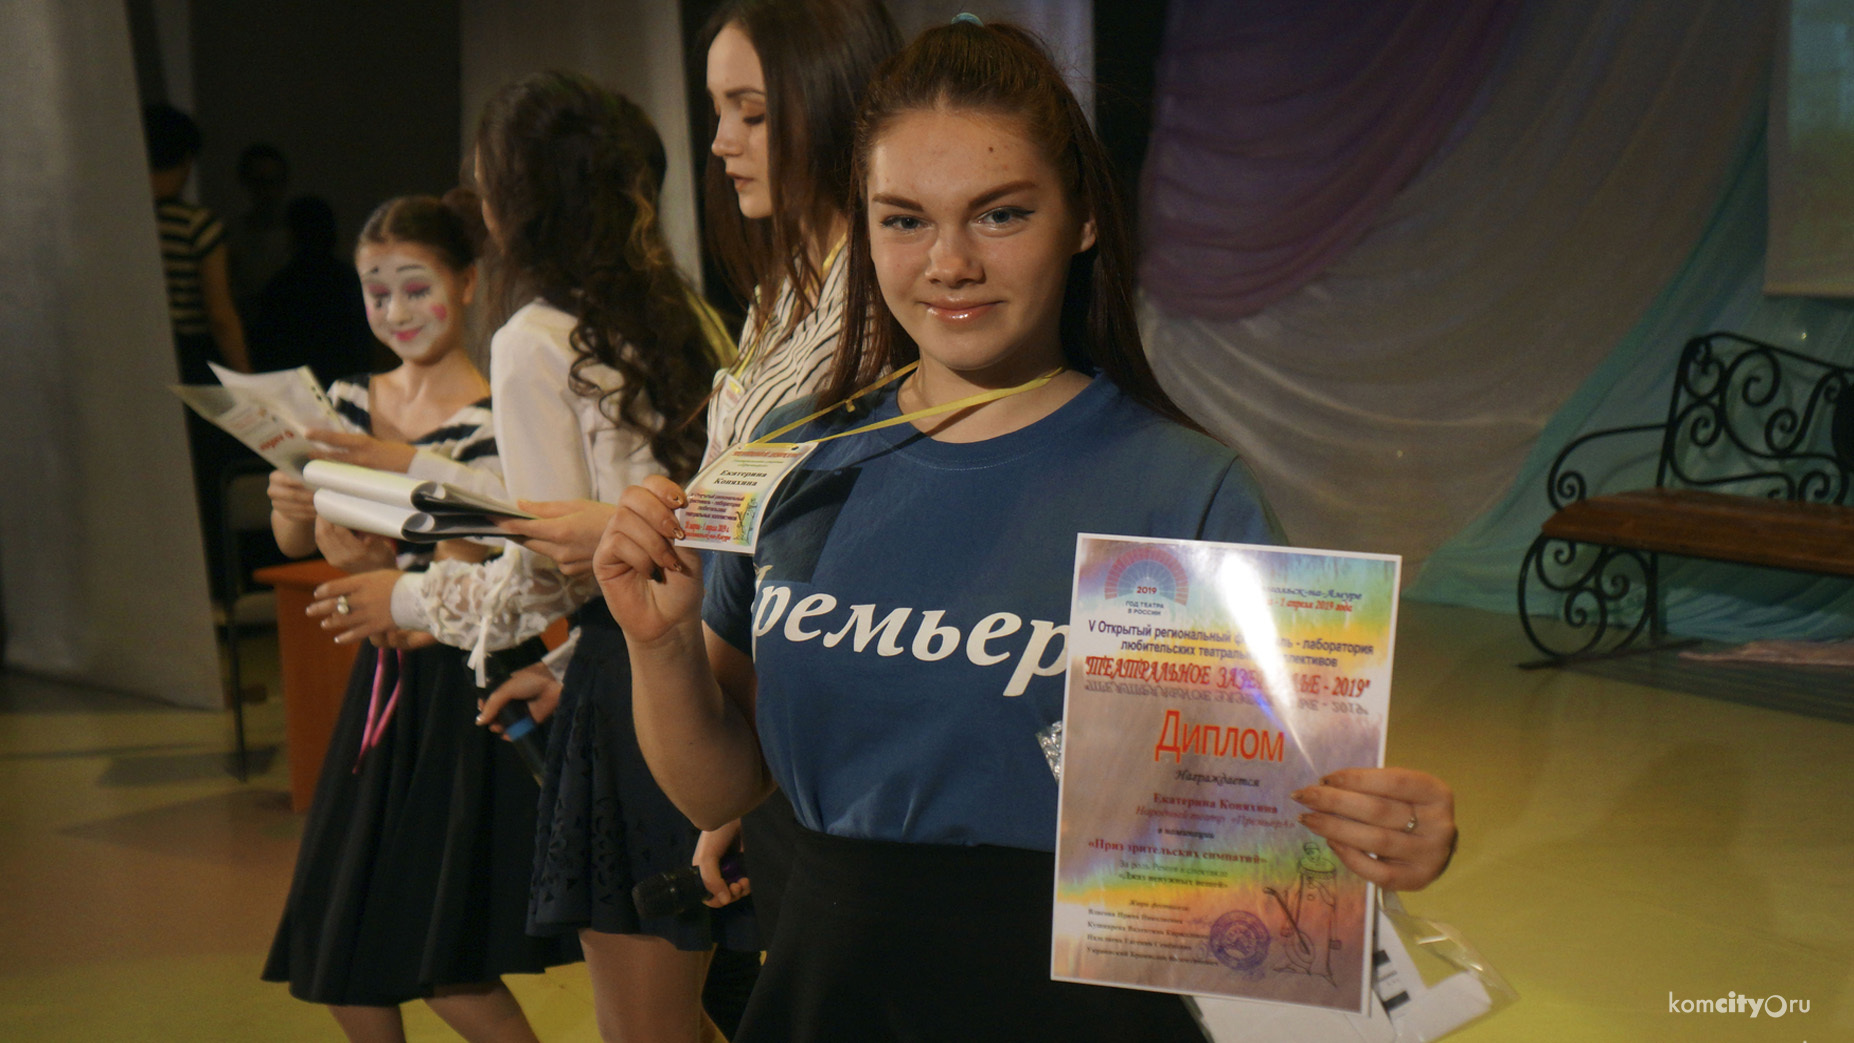 Региональный фестиваль «Театральное зазеркалье» отменён в Комсомольске-на-Амуре из-за коронавируса 